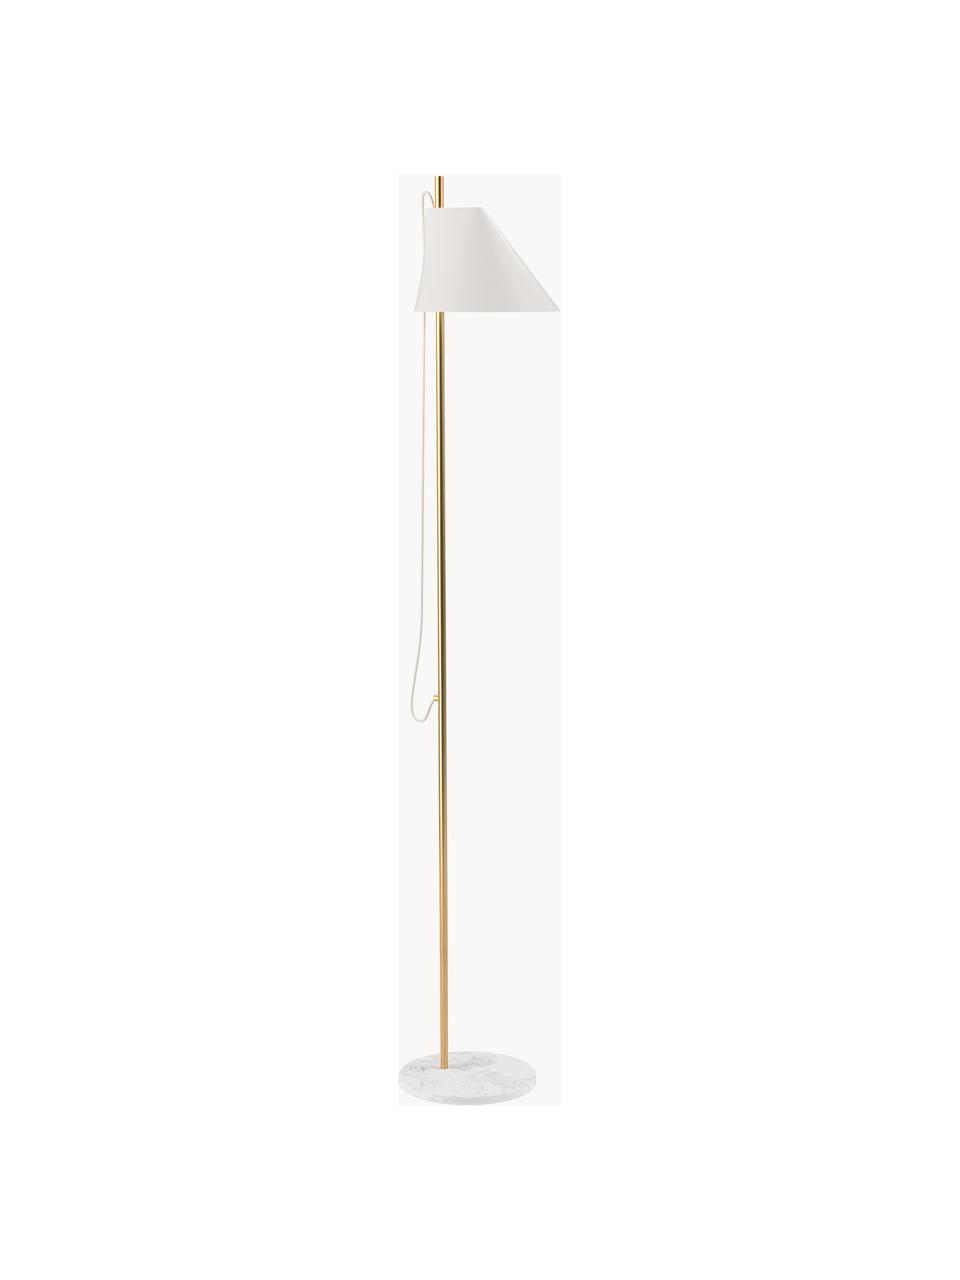 Lampa podłogowa LED z funkcją przyciemniania Yuh, Stelaż: mosiądz szczotkowany, Biały, marmurowy, mosiężny, W 140 cm